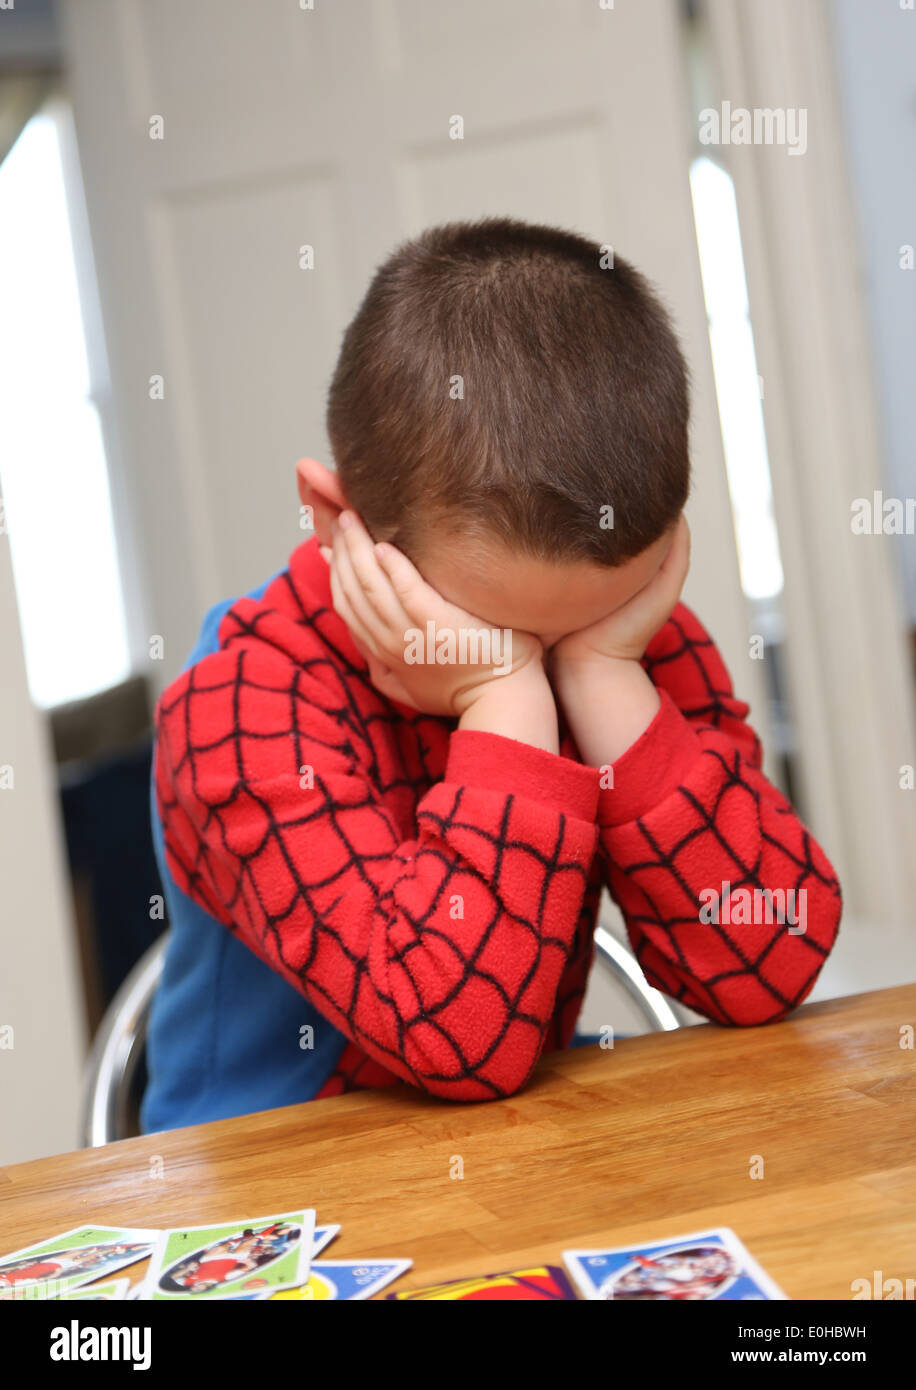 4 year old boy sulking Stock Photo